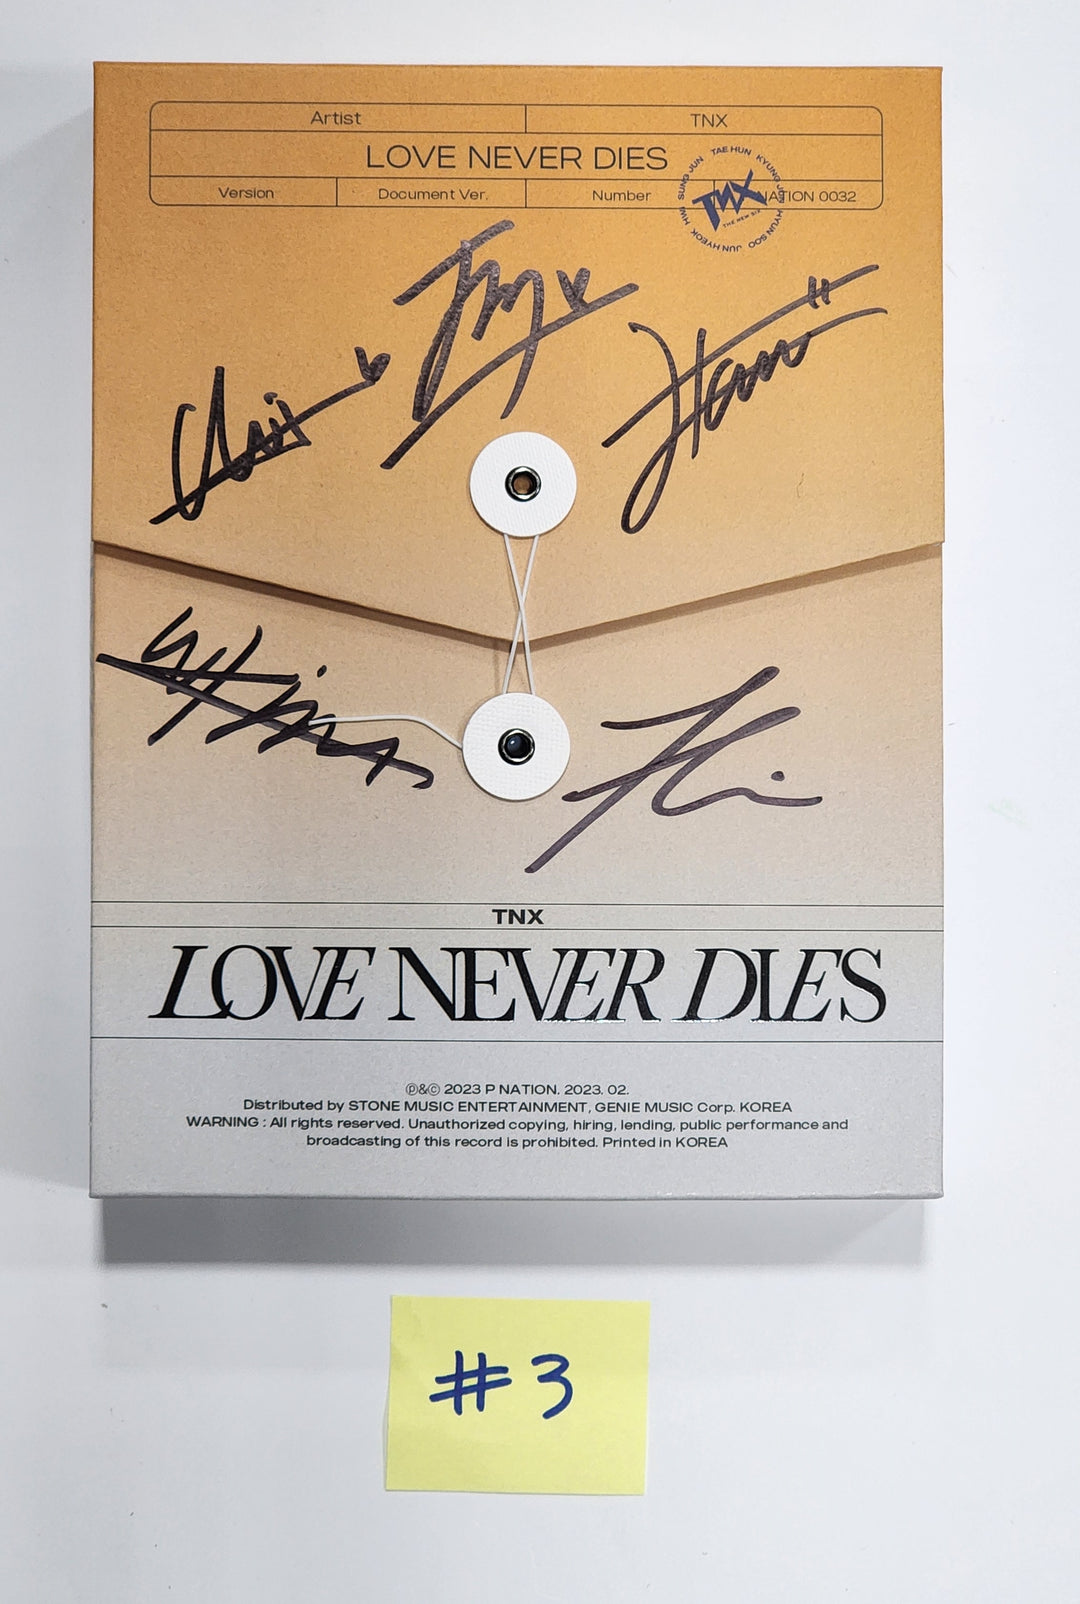 TNX "Love Never Dies" - 친필 사인(서명) 프로모 앨범